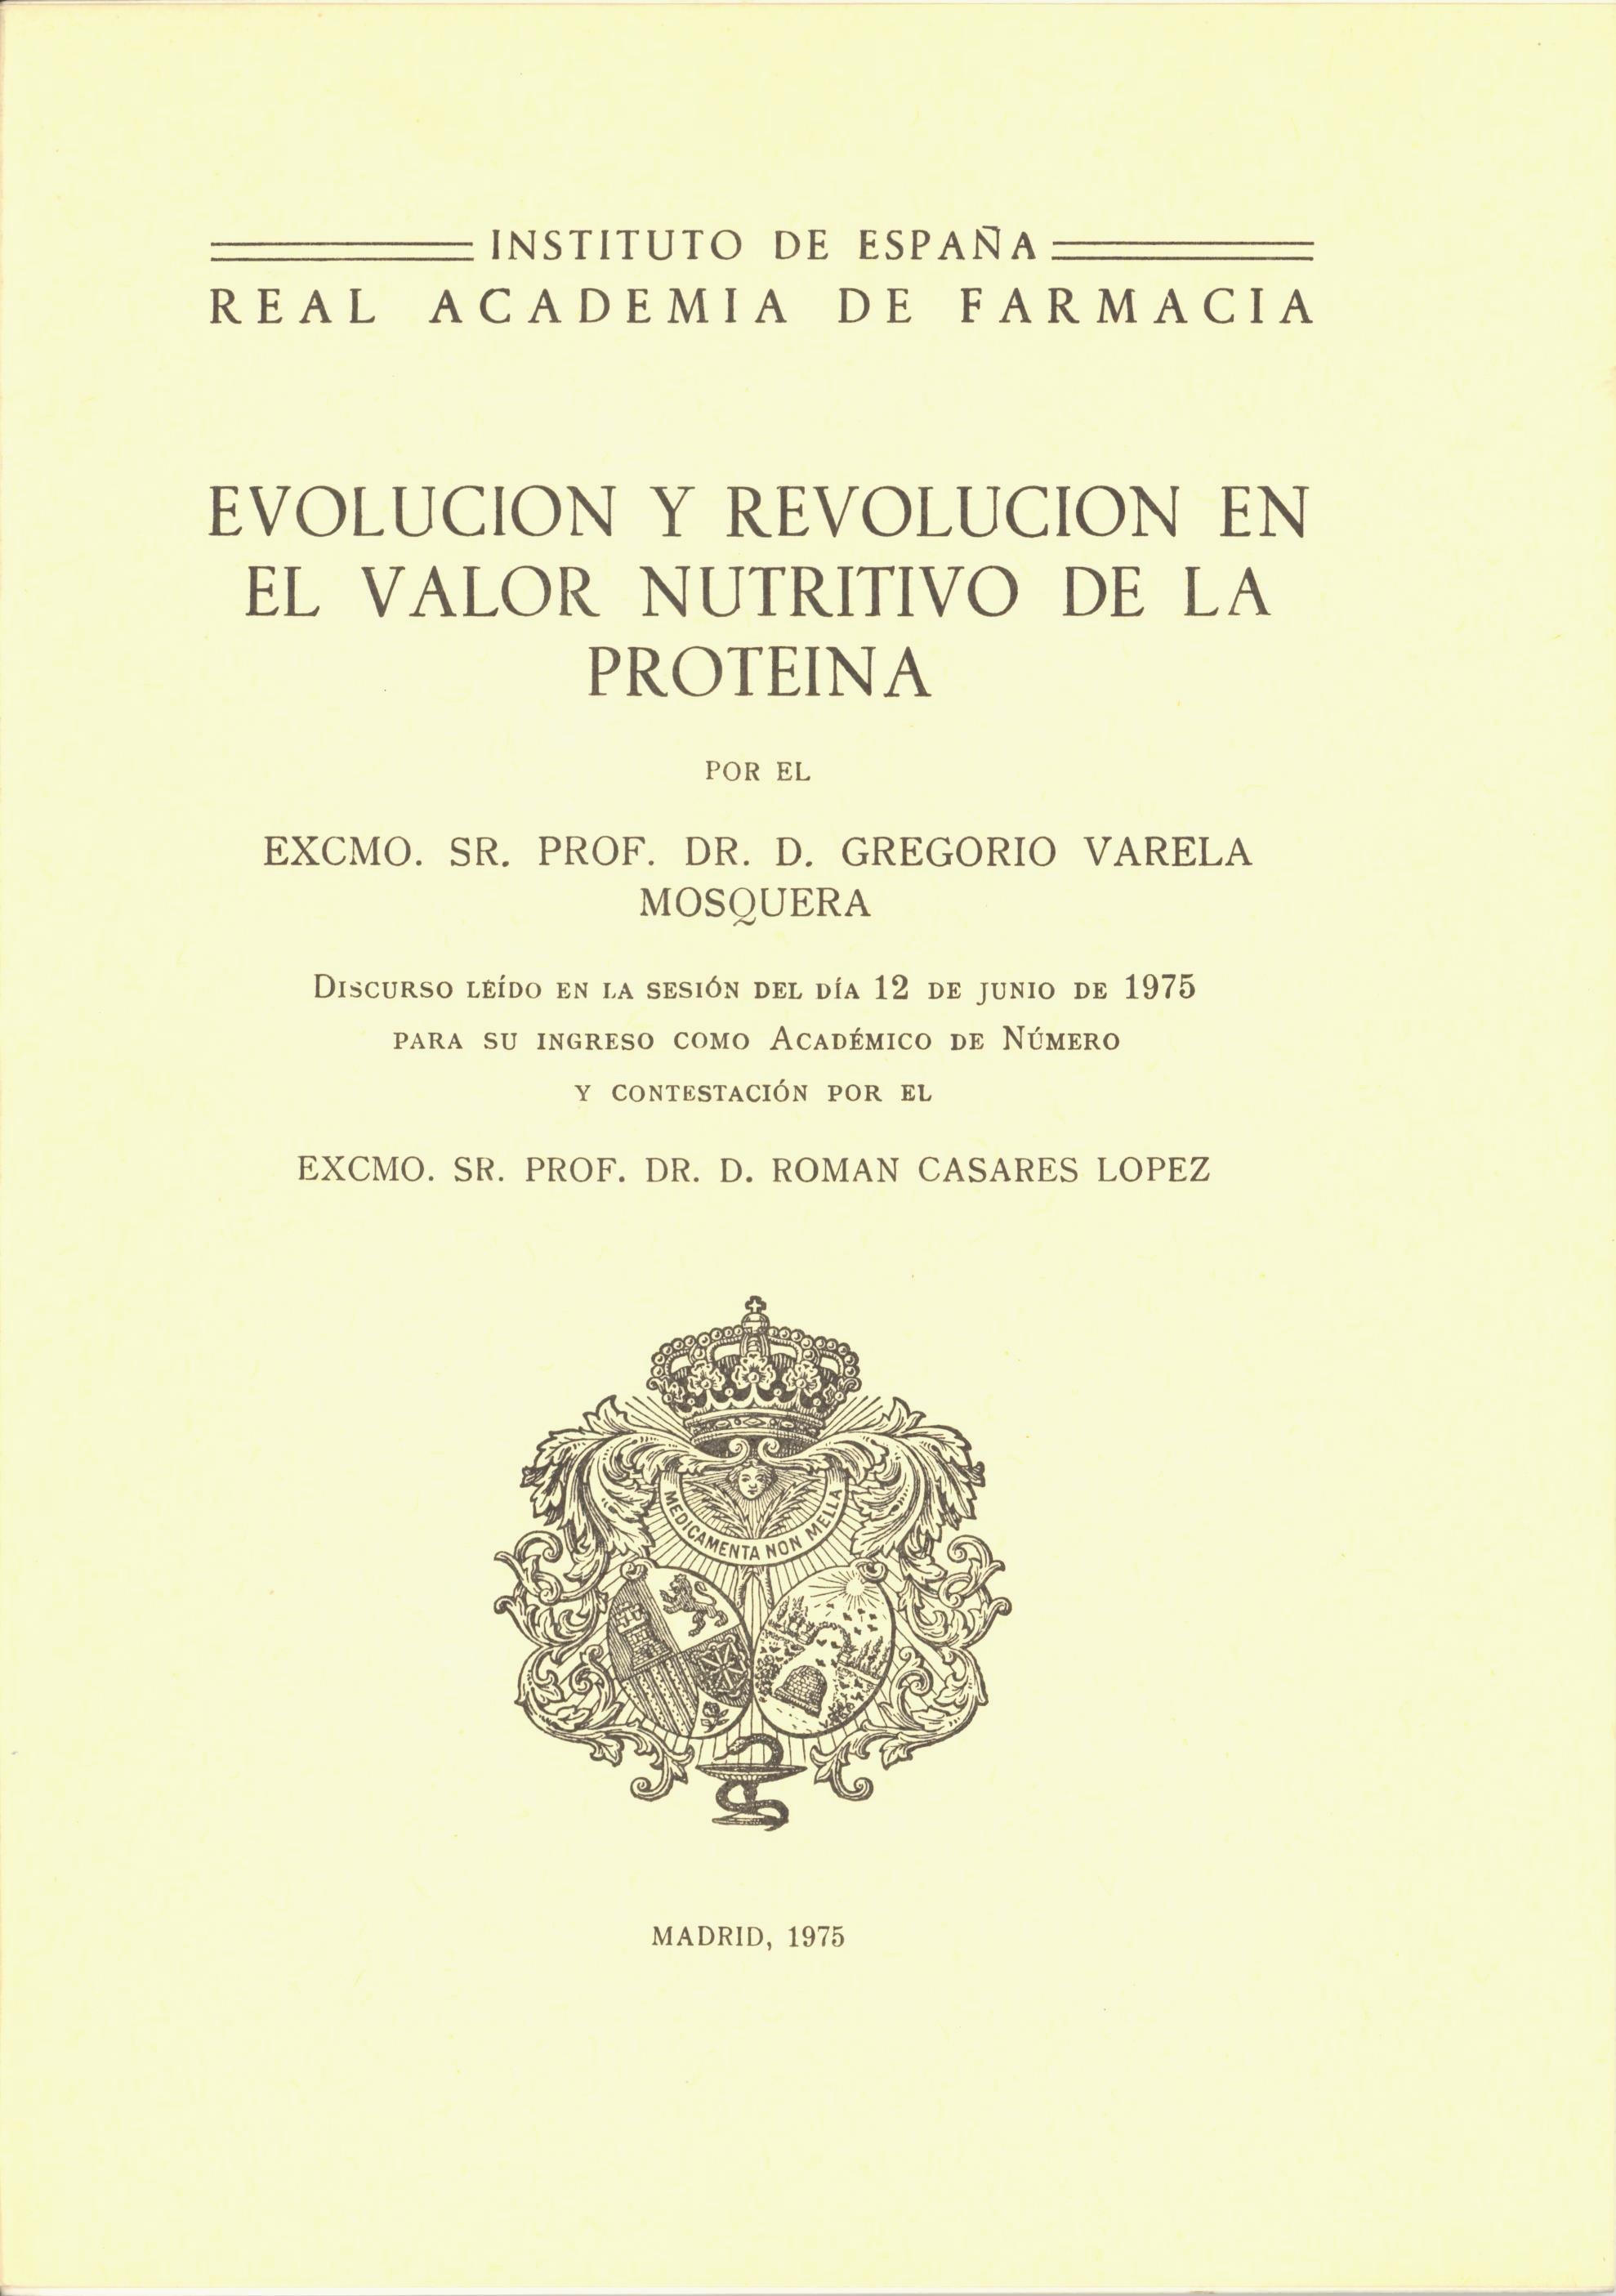 Discurso del Prof. Varela en pdf